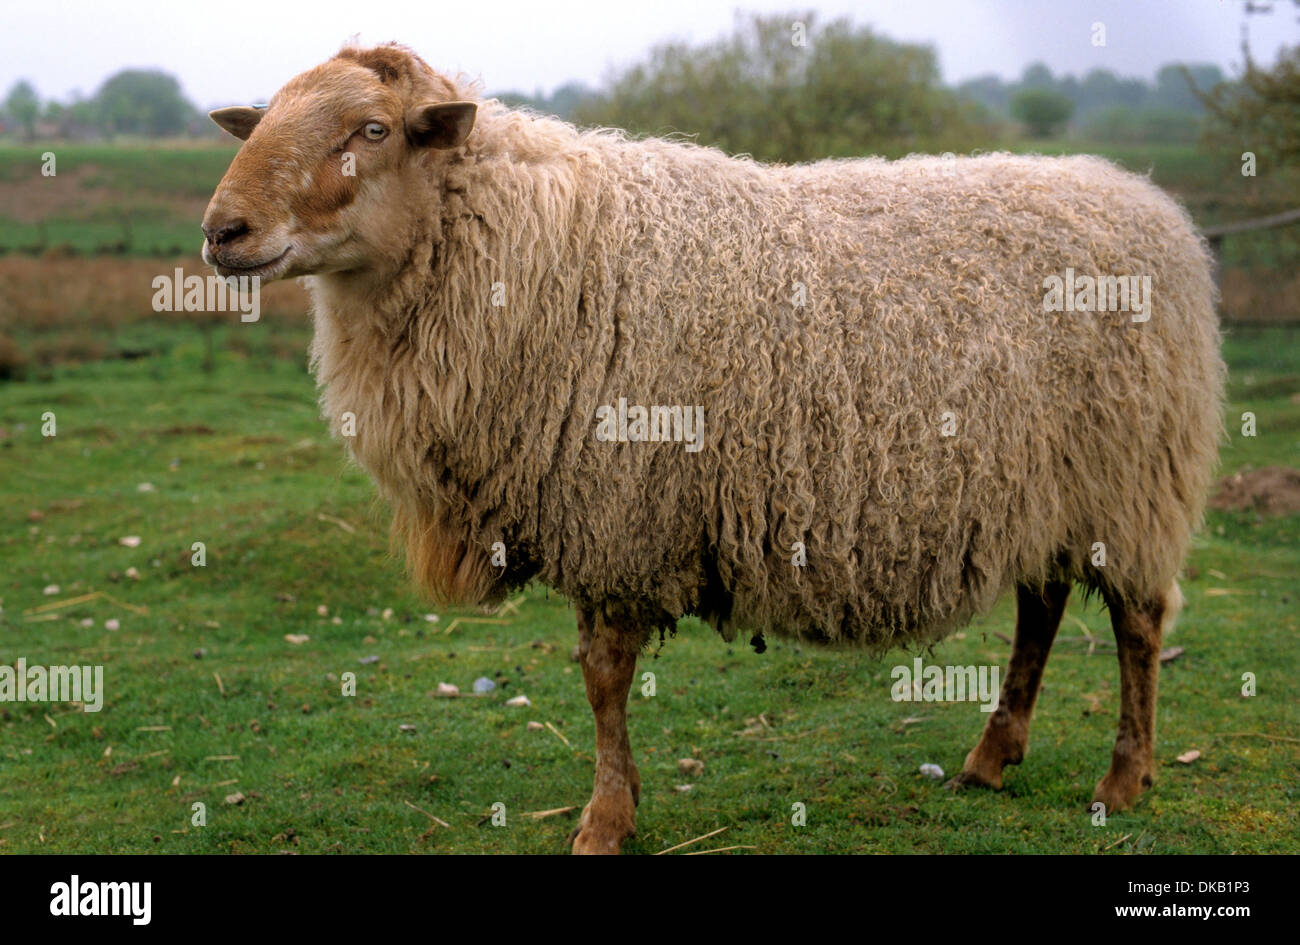 Houtland-Schaf, 200 Tiere weltweit flämisches Waldschaf, Houtland sheep, 200 animals worldwide Flemish forest sheep Stock Photo